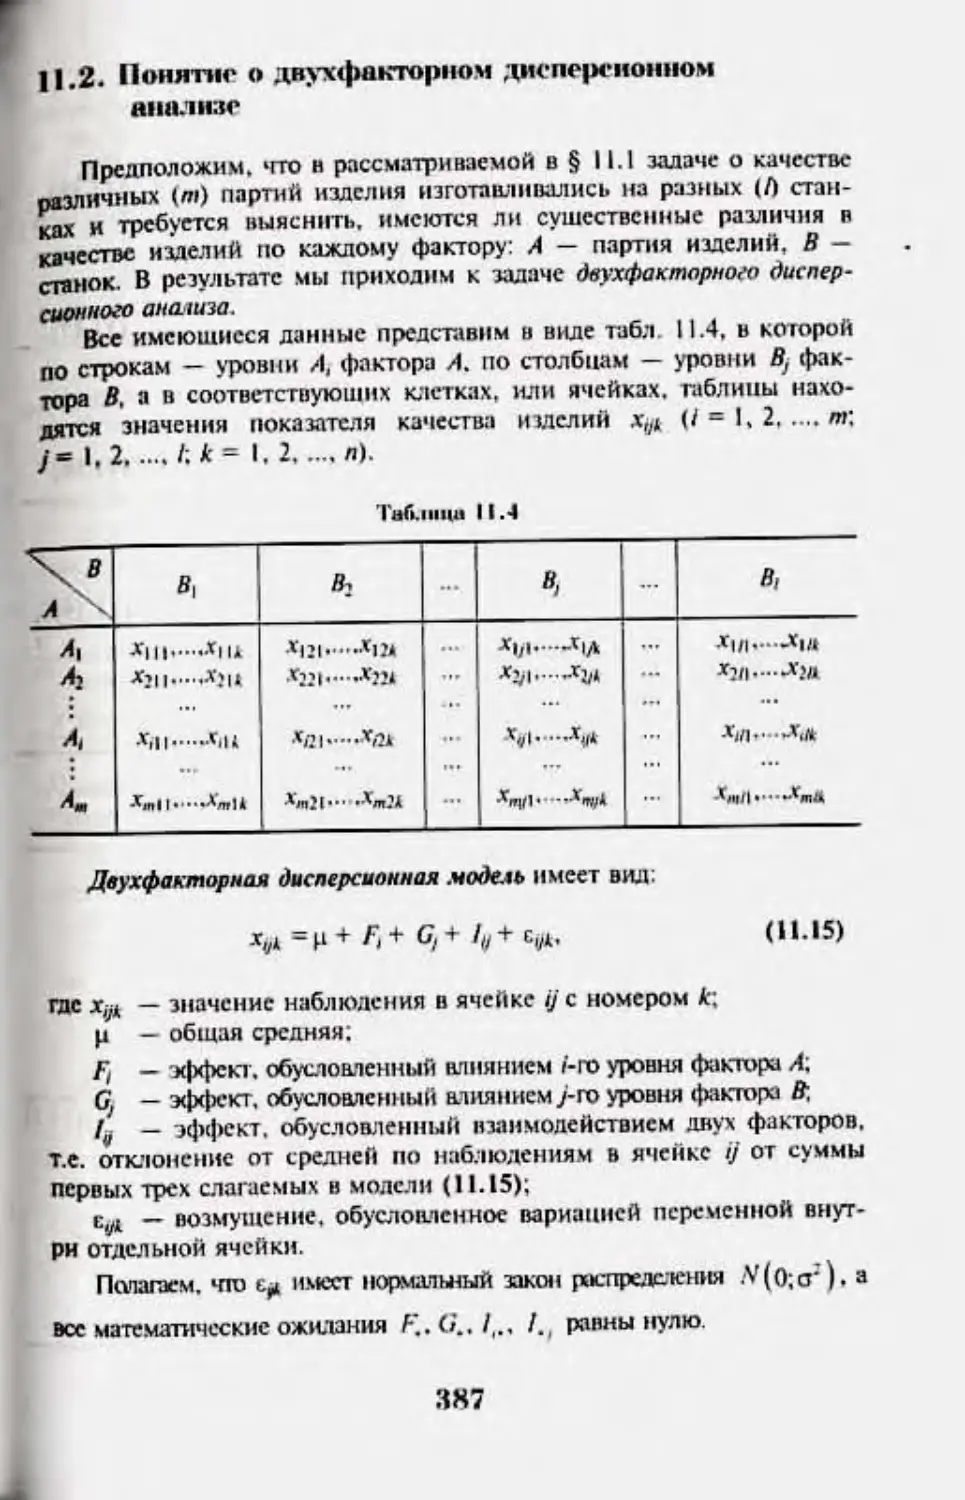 11.2 Понятие о двухфакторном дисперсионном анализе.